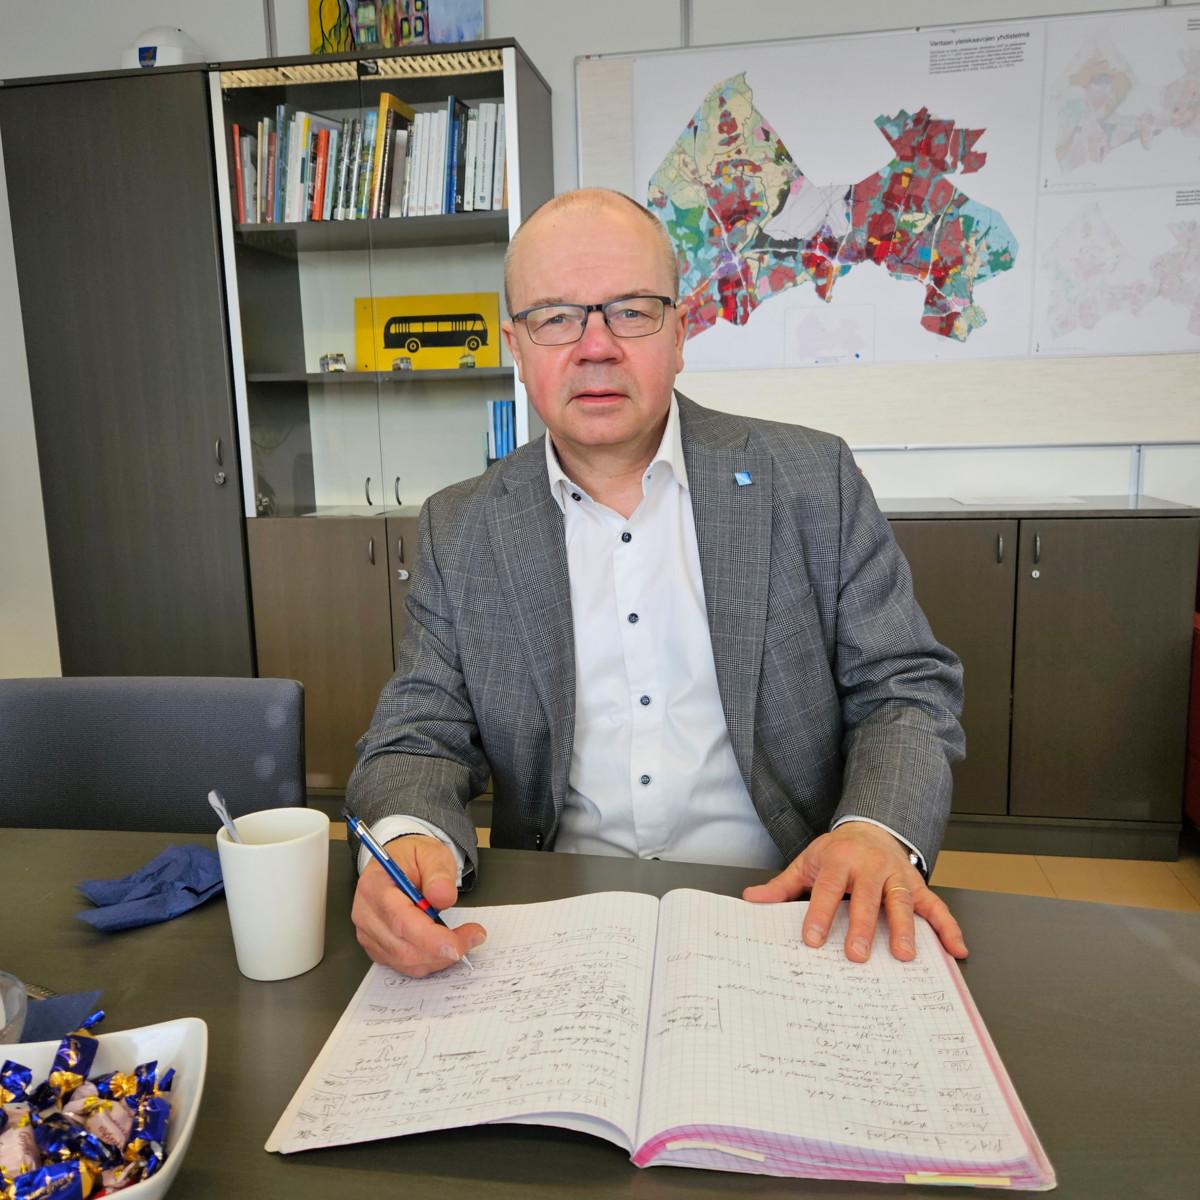 Vantaan apulaiskaupunginjohtaja Tero Anttila arvioi, että Jokiniemen alueelle voisi tulla asuntoja noin 2 000 vantaalaiselle. Asukasmäärä ratkeaa kaavoituksessa. Kuva: Pauli Juusela